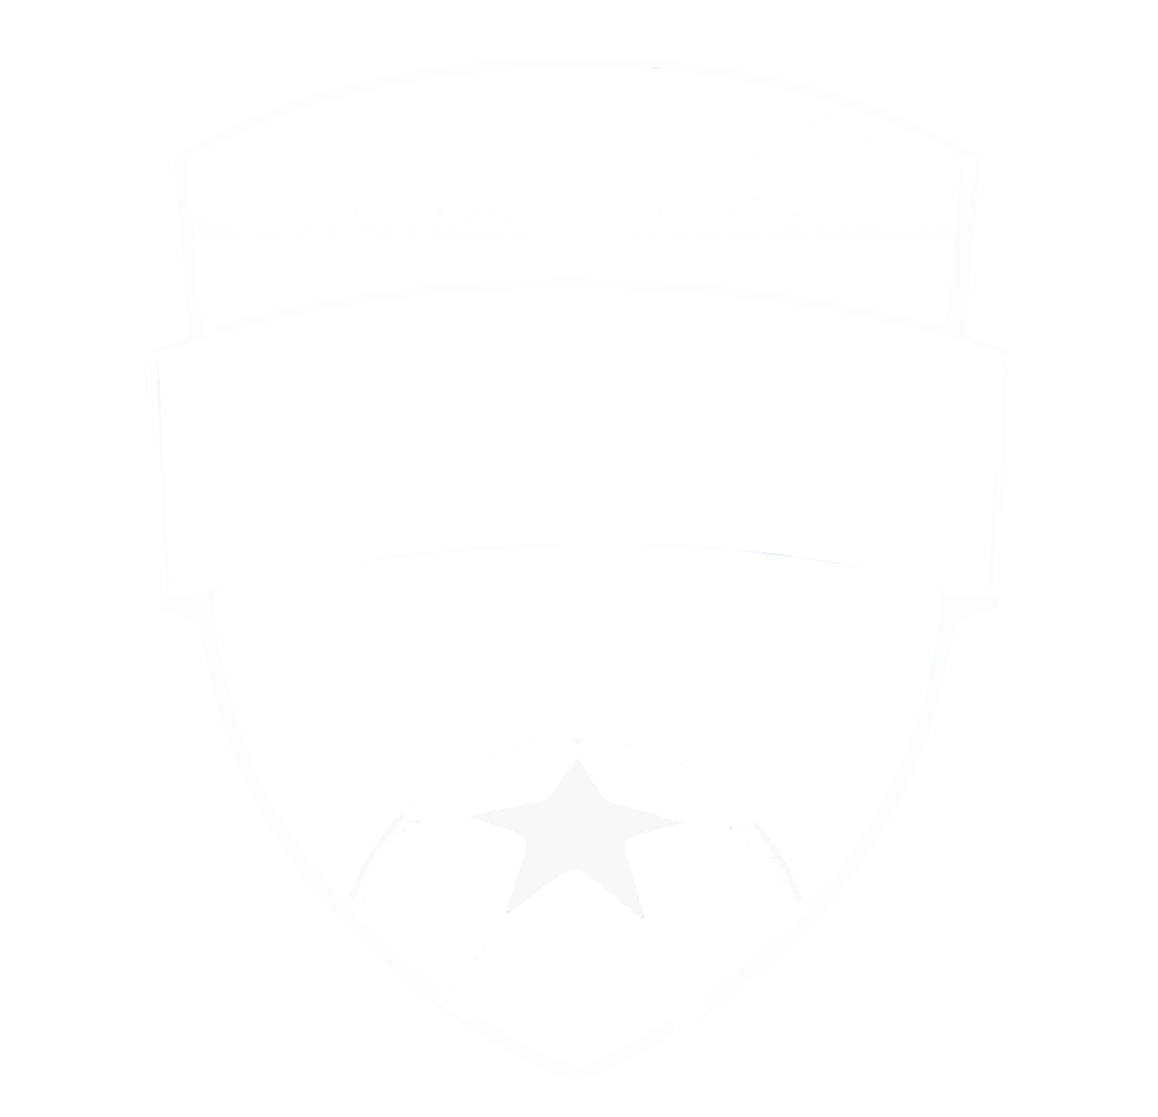 MDS Academy